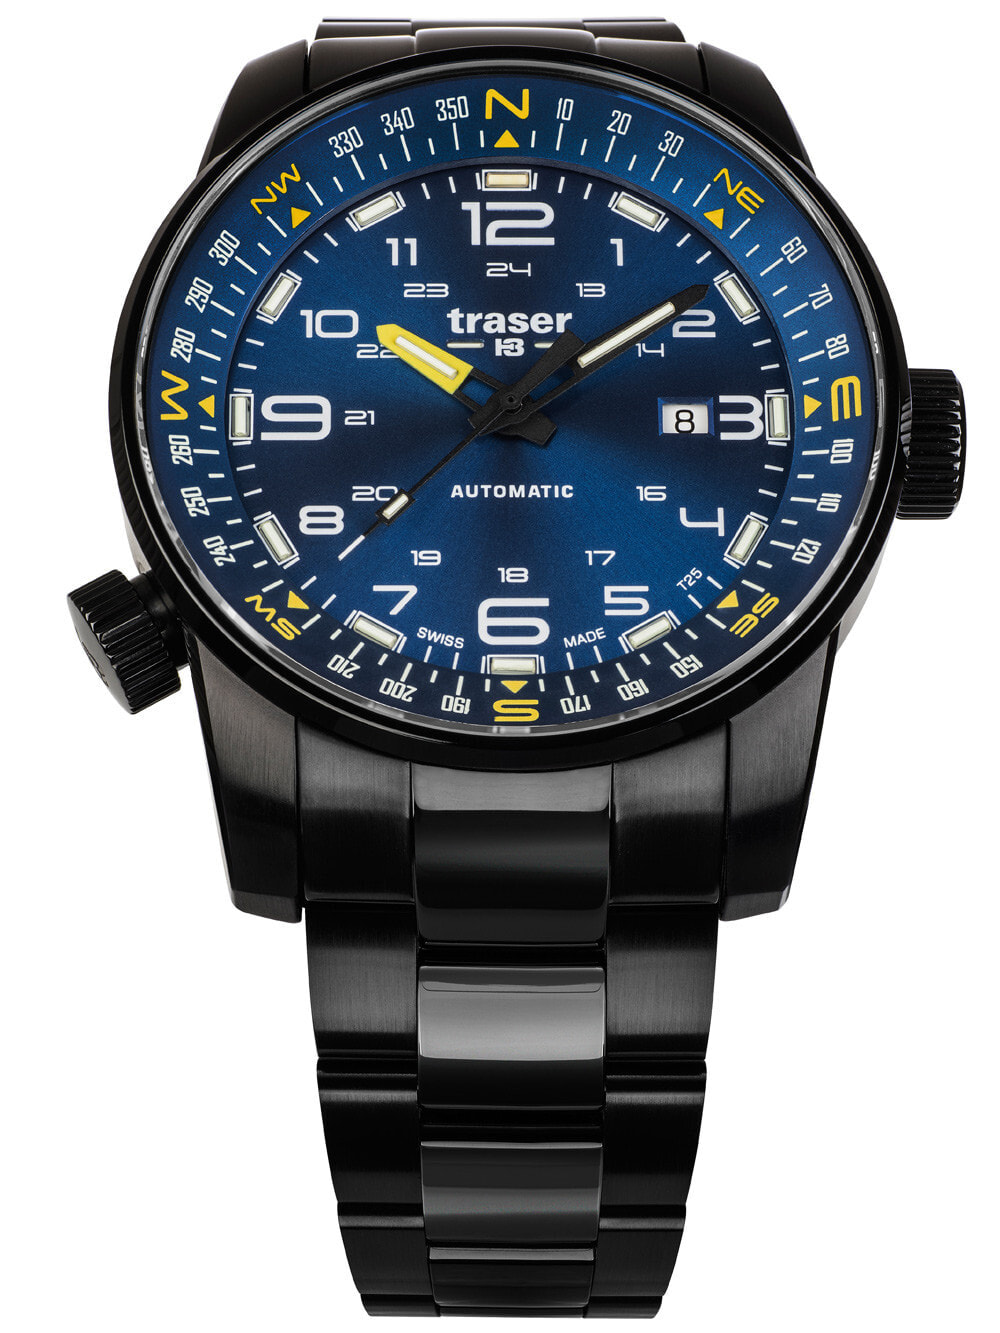 Мужские наручные часы с черным браслетом Traser H3 109523 P68 Pathfinder automatic 46mm 10ATM